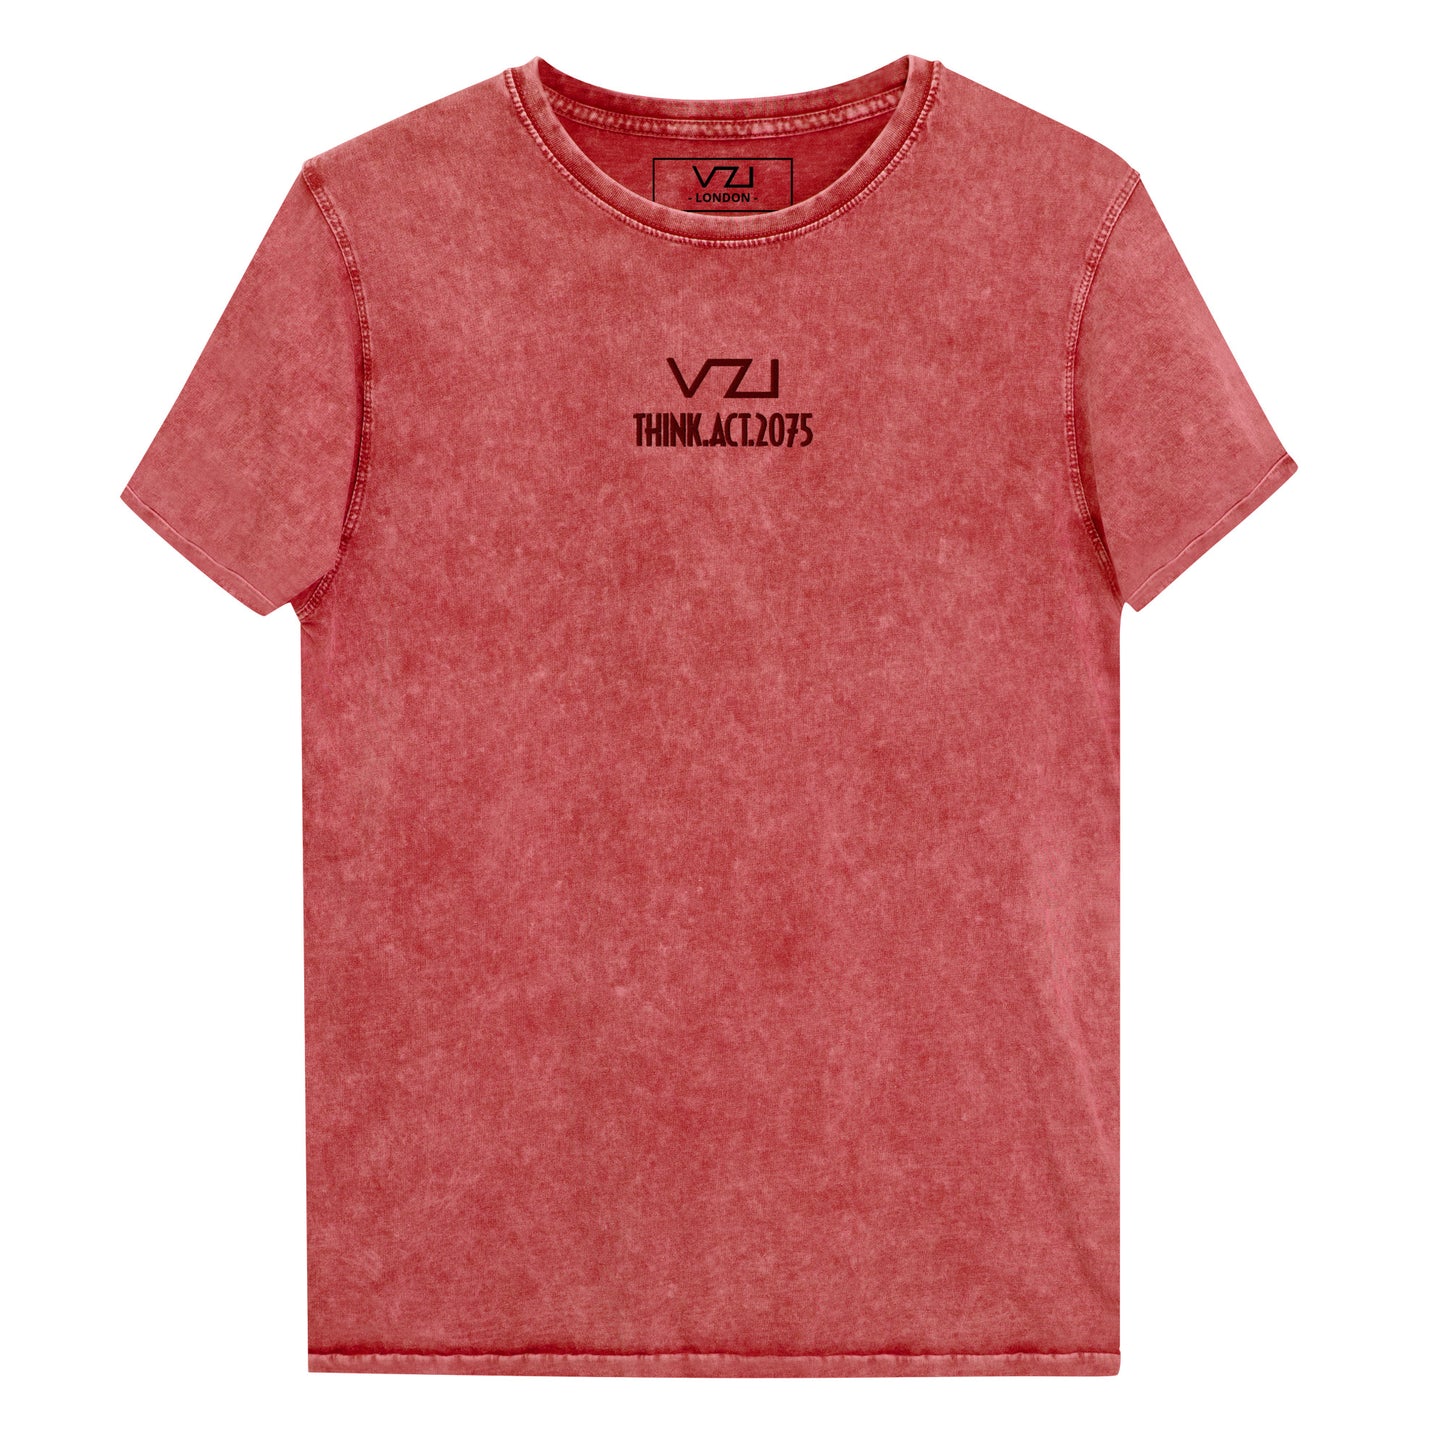 VZI T-Shirt – T-Shirt für Damen: Jeans-T-Shirt, Streetwear, Smart Casual, Jeans